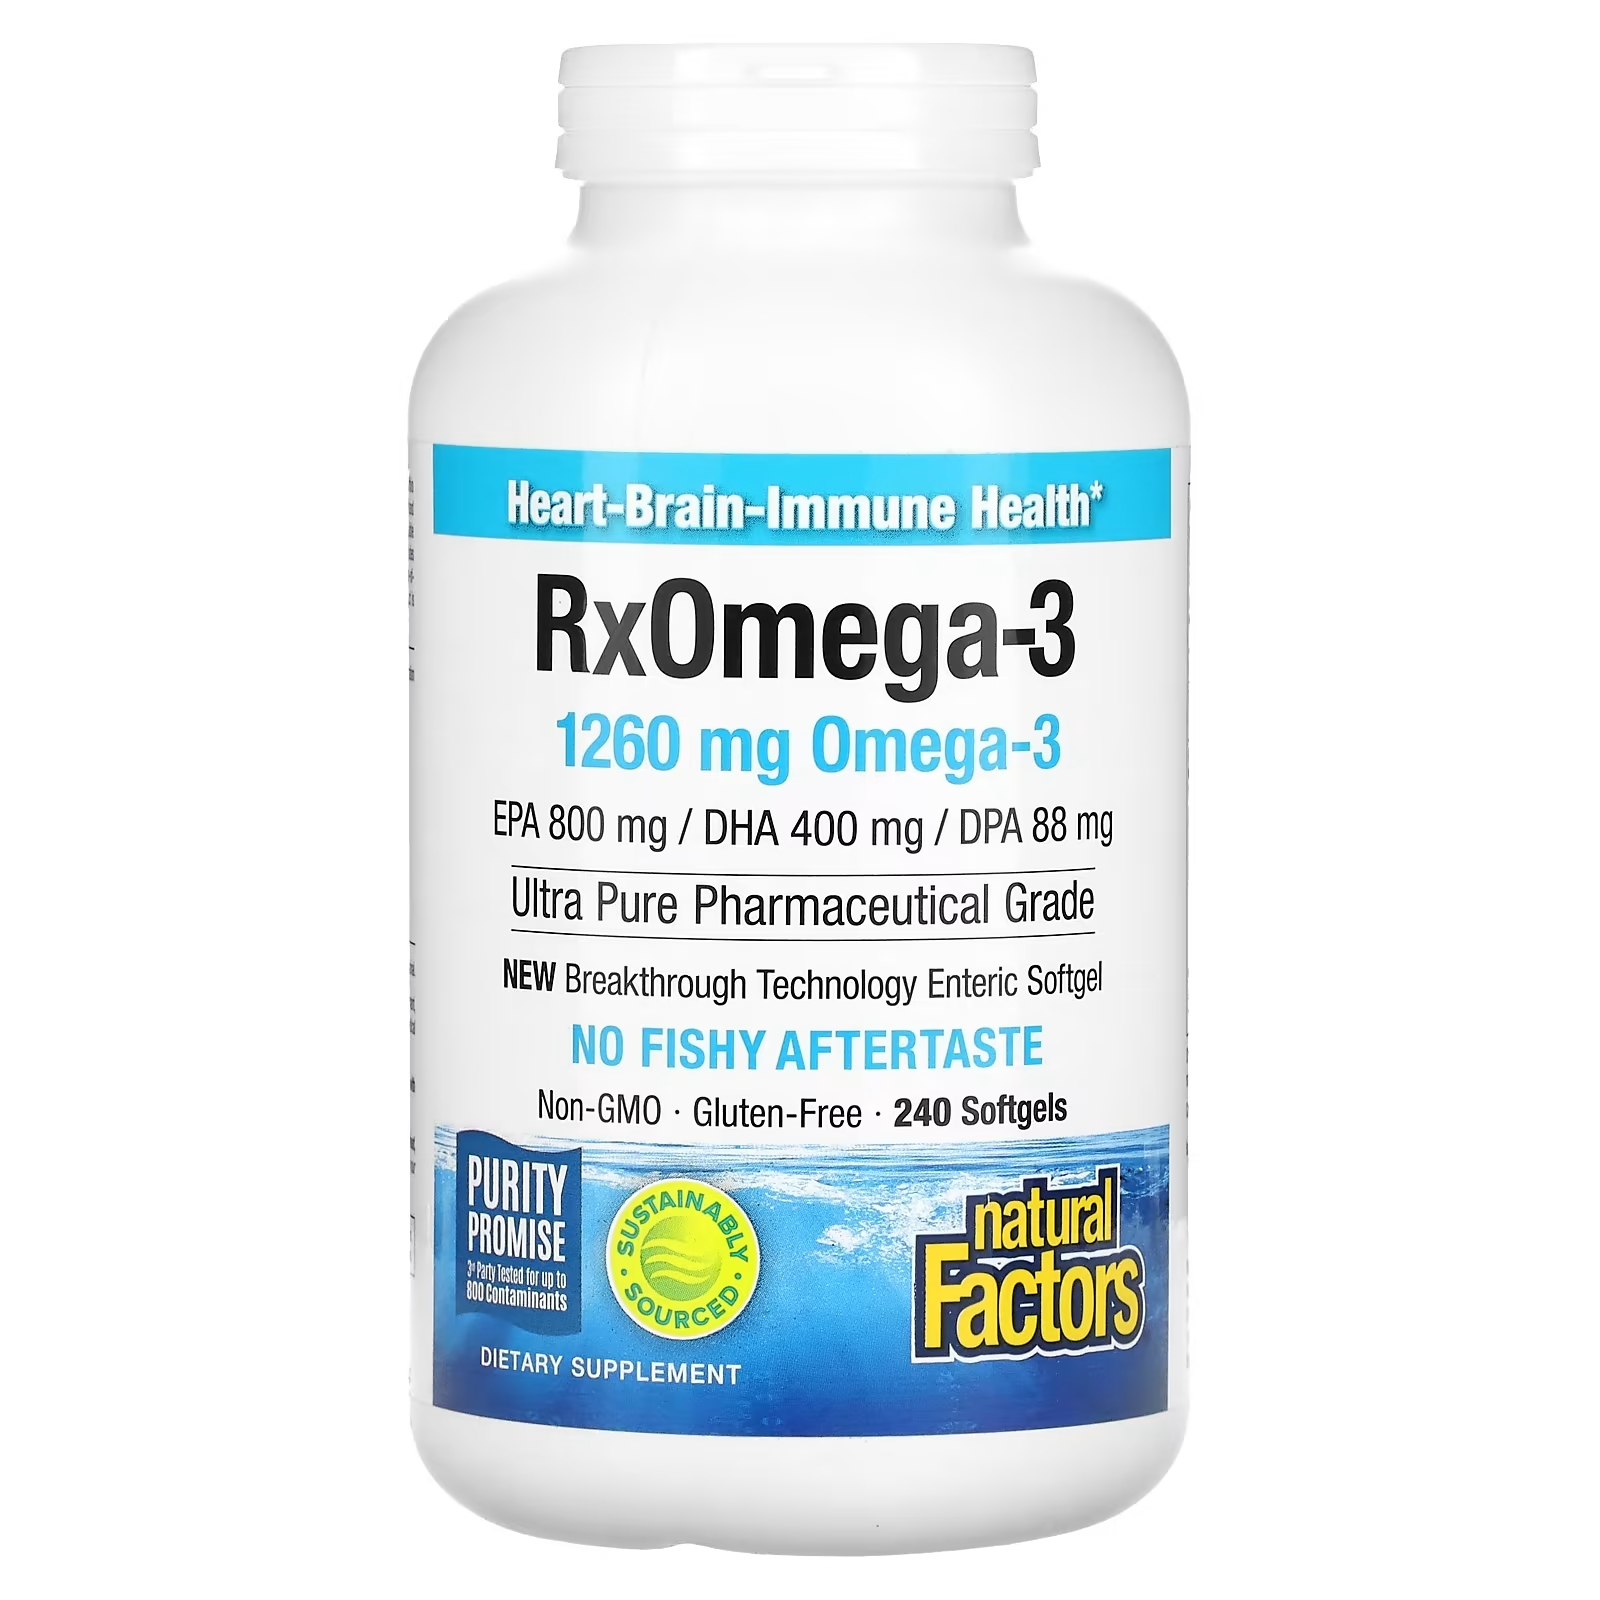 Natural Factors Natural Factors Rx Omega-3 рыбий жир 400 мг ЭПК и 200 мг ДГК, 240 мягких таблеток natural factors rx omega 3 1260 мг 240 мягких таблеток 630 мг на мягкую таблетку